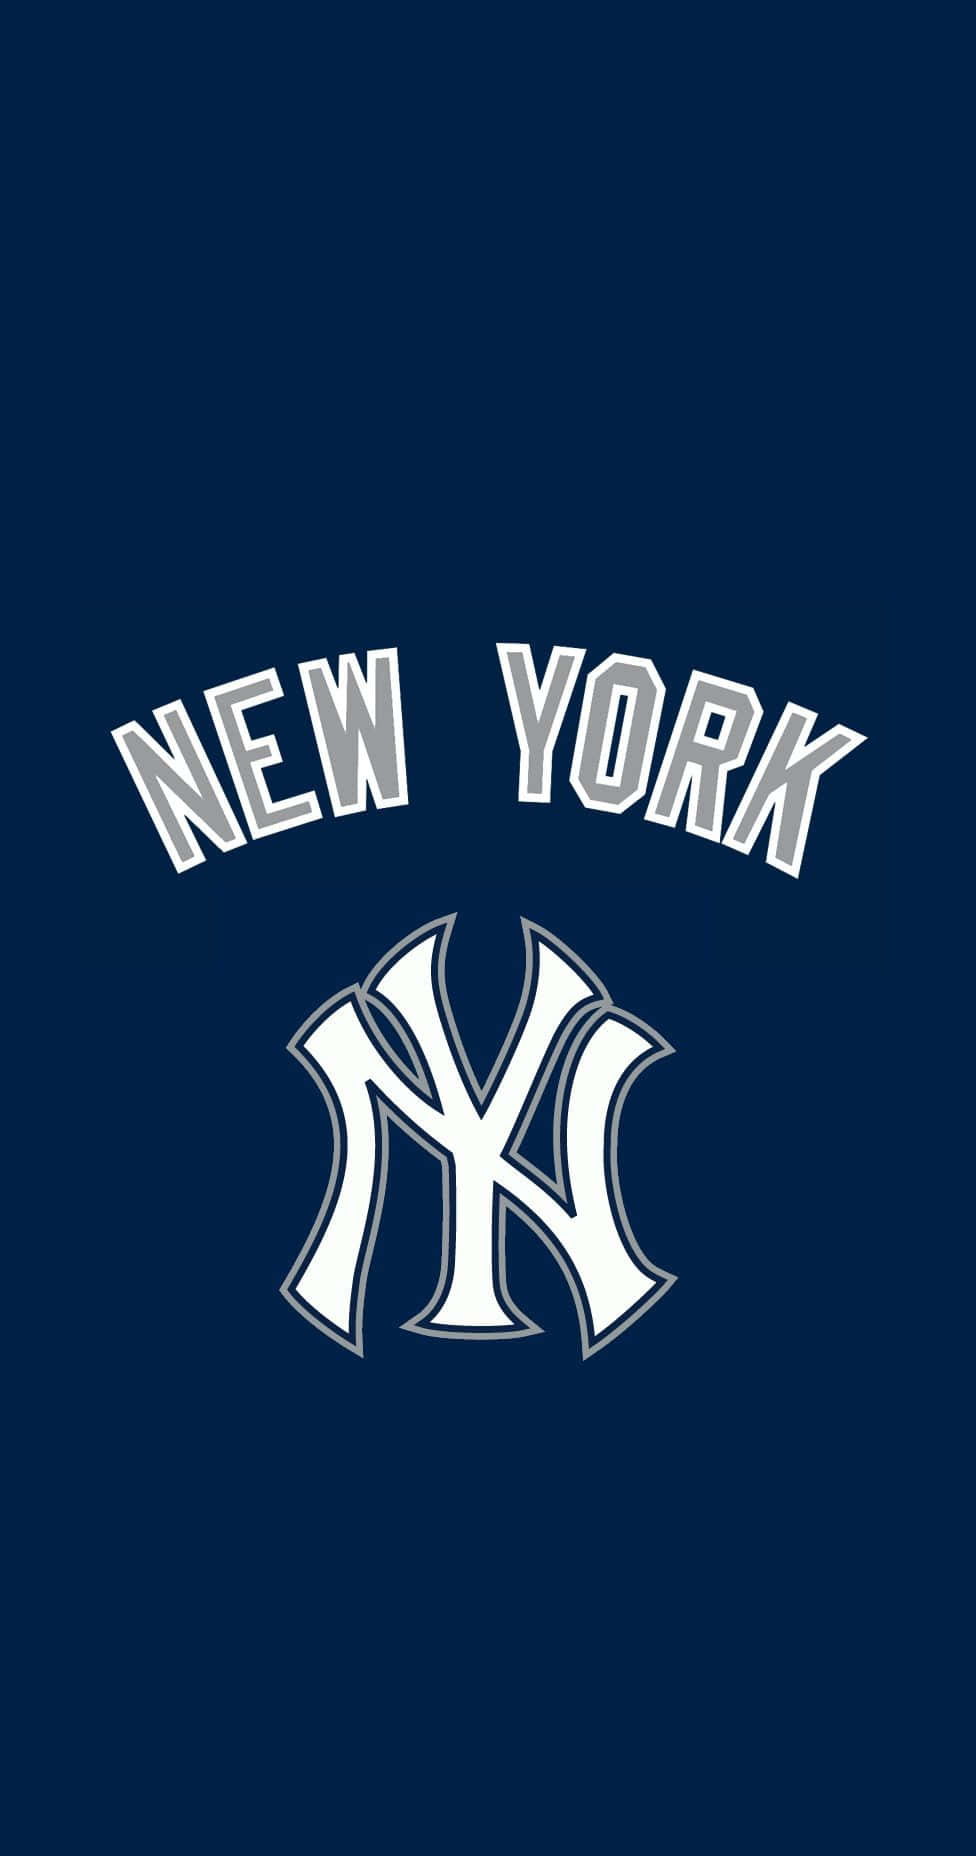 49 New York Yankees iPhone Wallpaper  WallpaperSafari